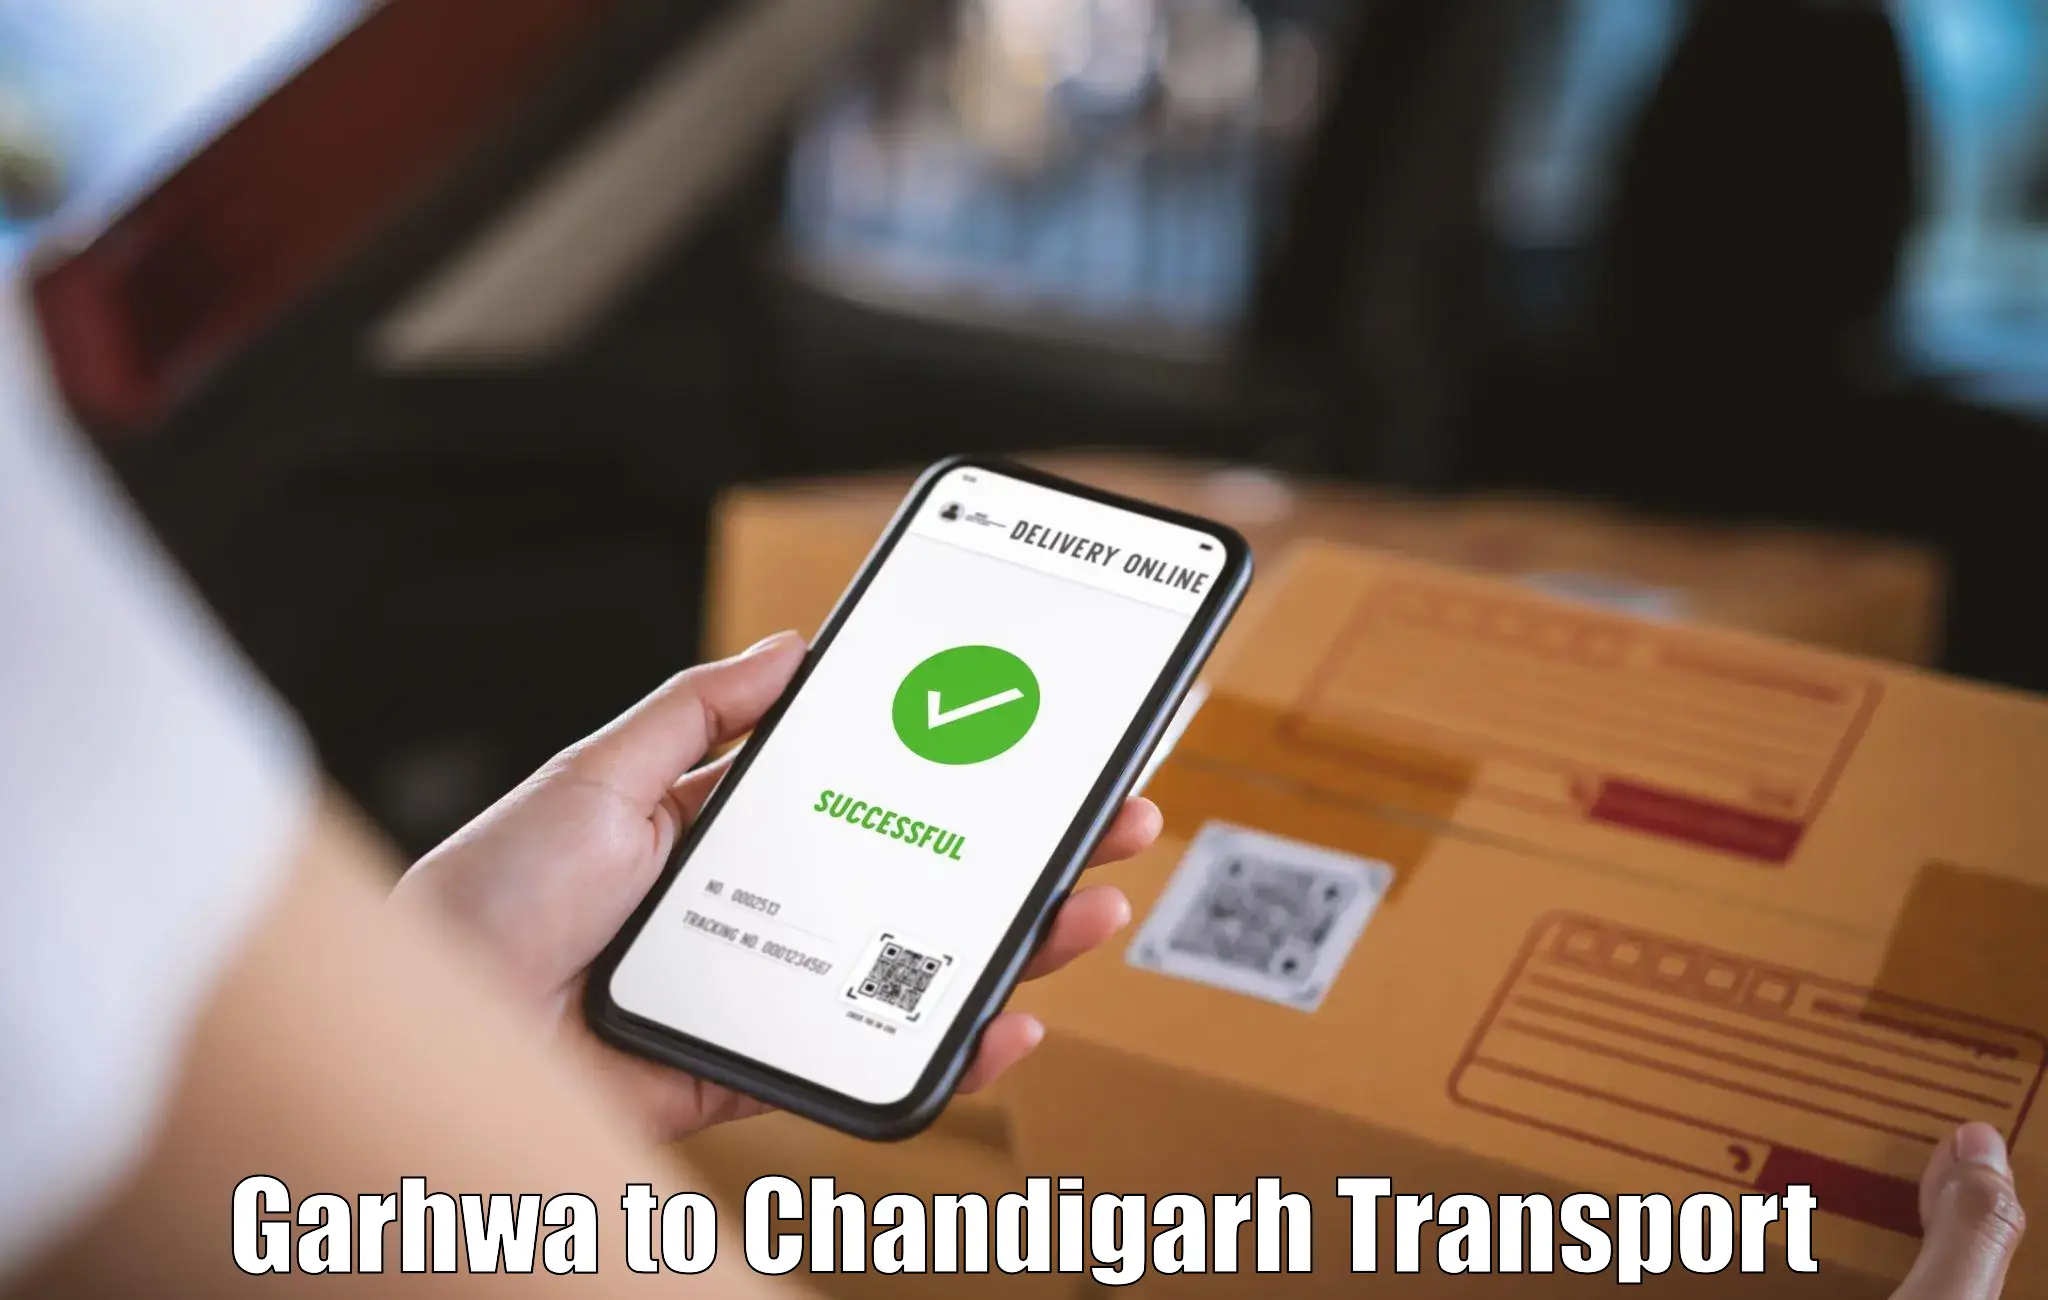 Land transport services Garhwa to Chandigarh